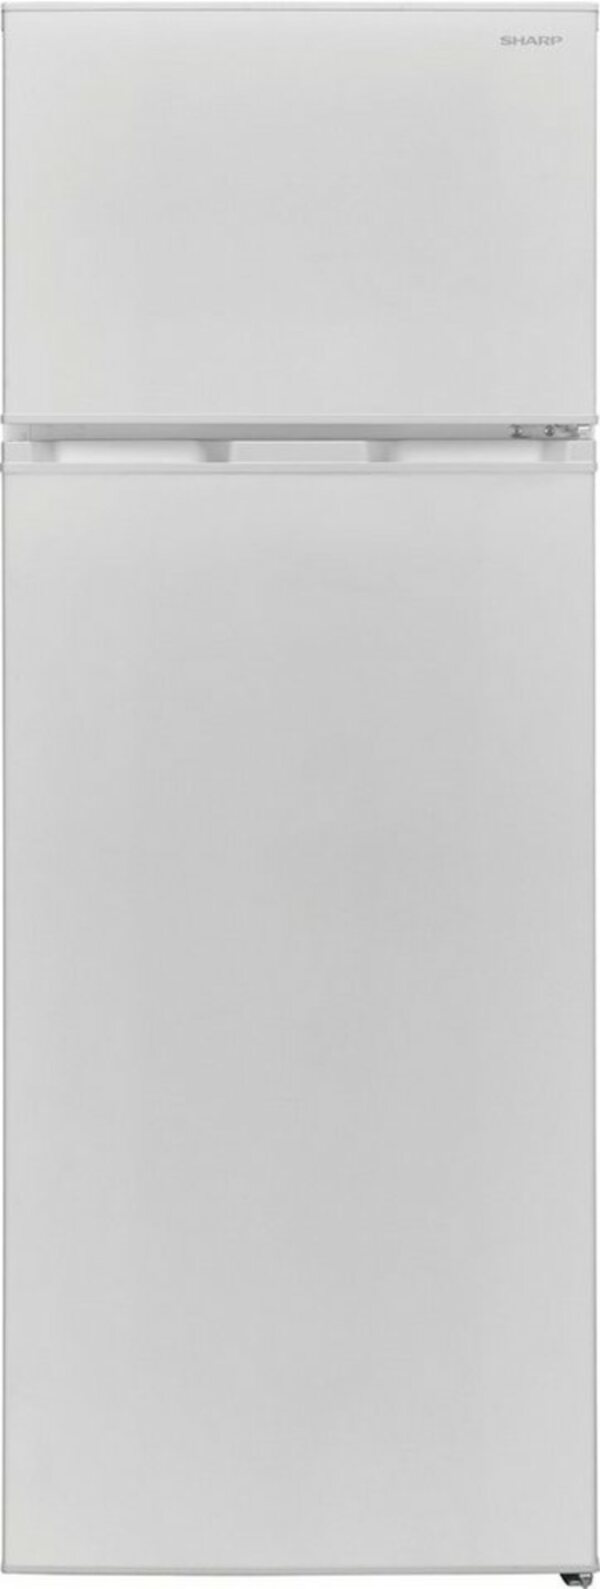 Bild 1 von Sharp Top Freezer SJ-FTB01ITXWD-EU, 145 cm hoch, 54 cm breit